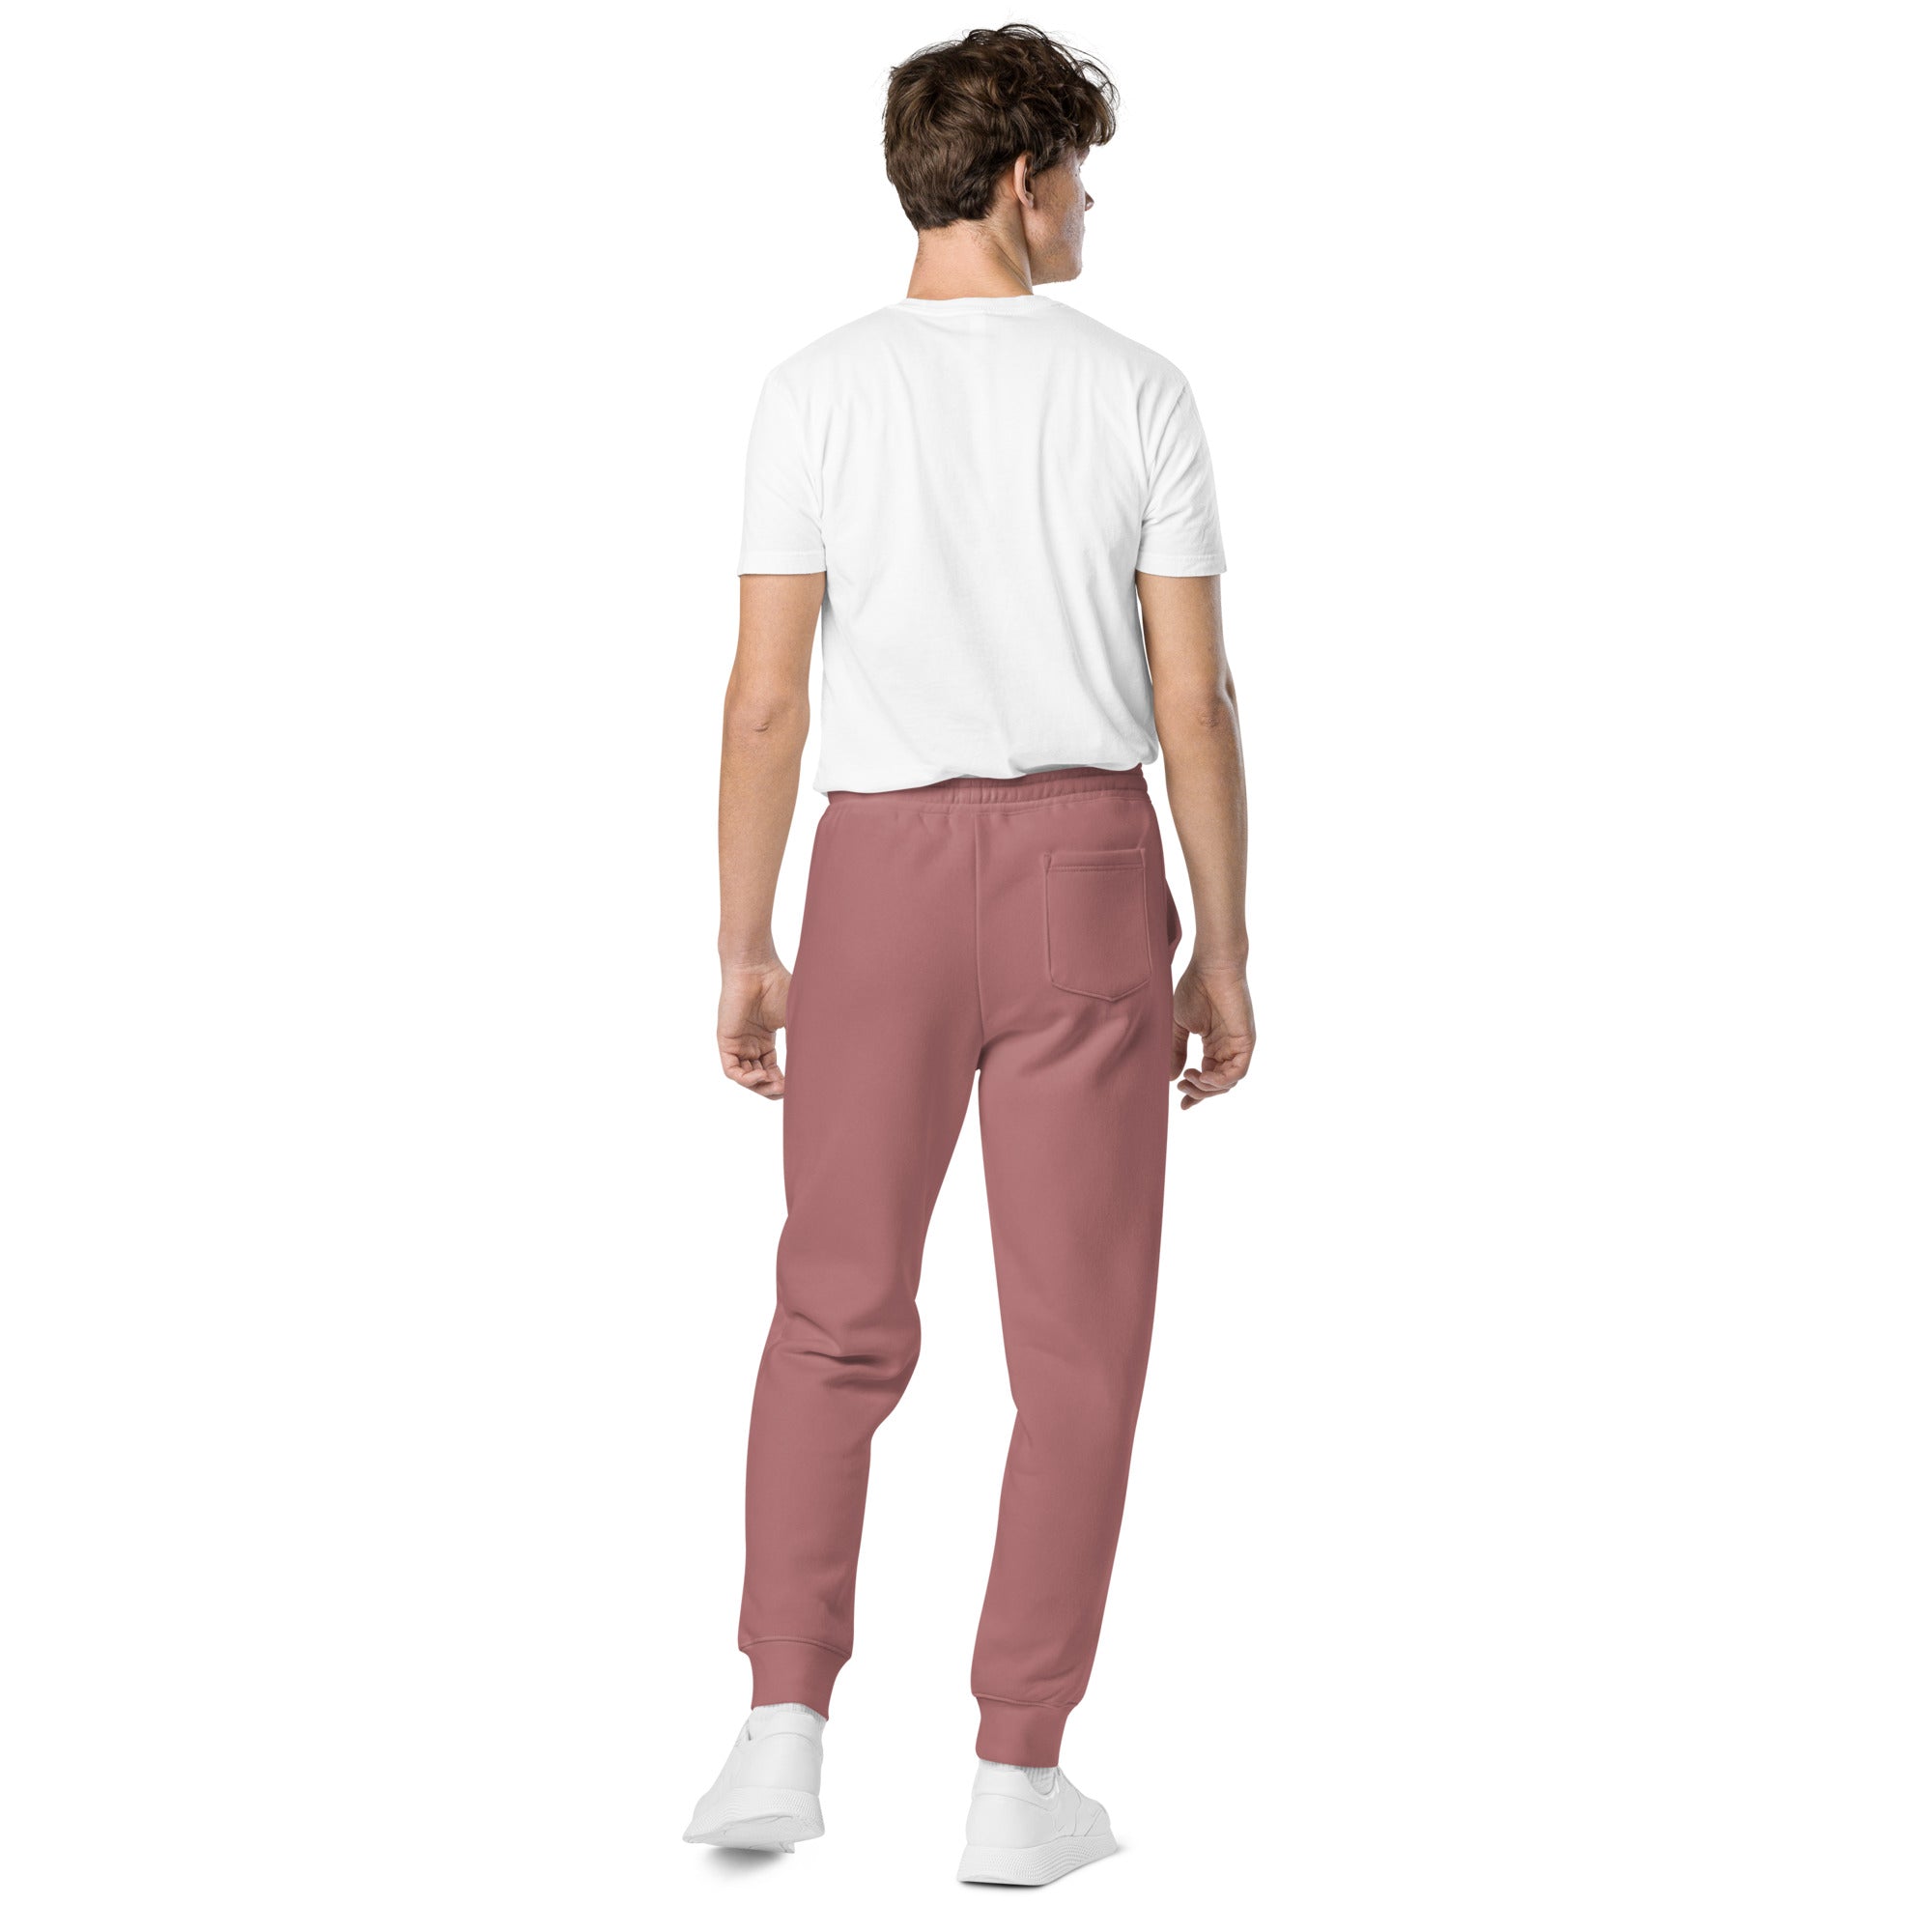 Pantalones de chándal unisex teñidos con pigmentos